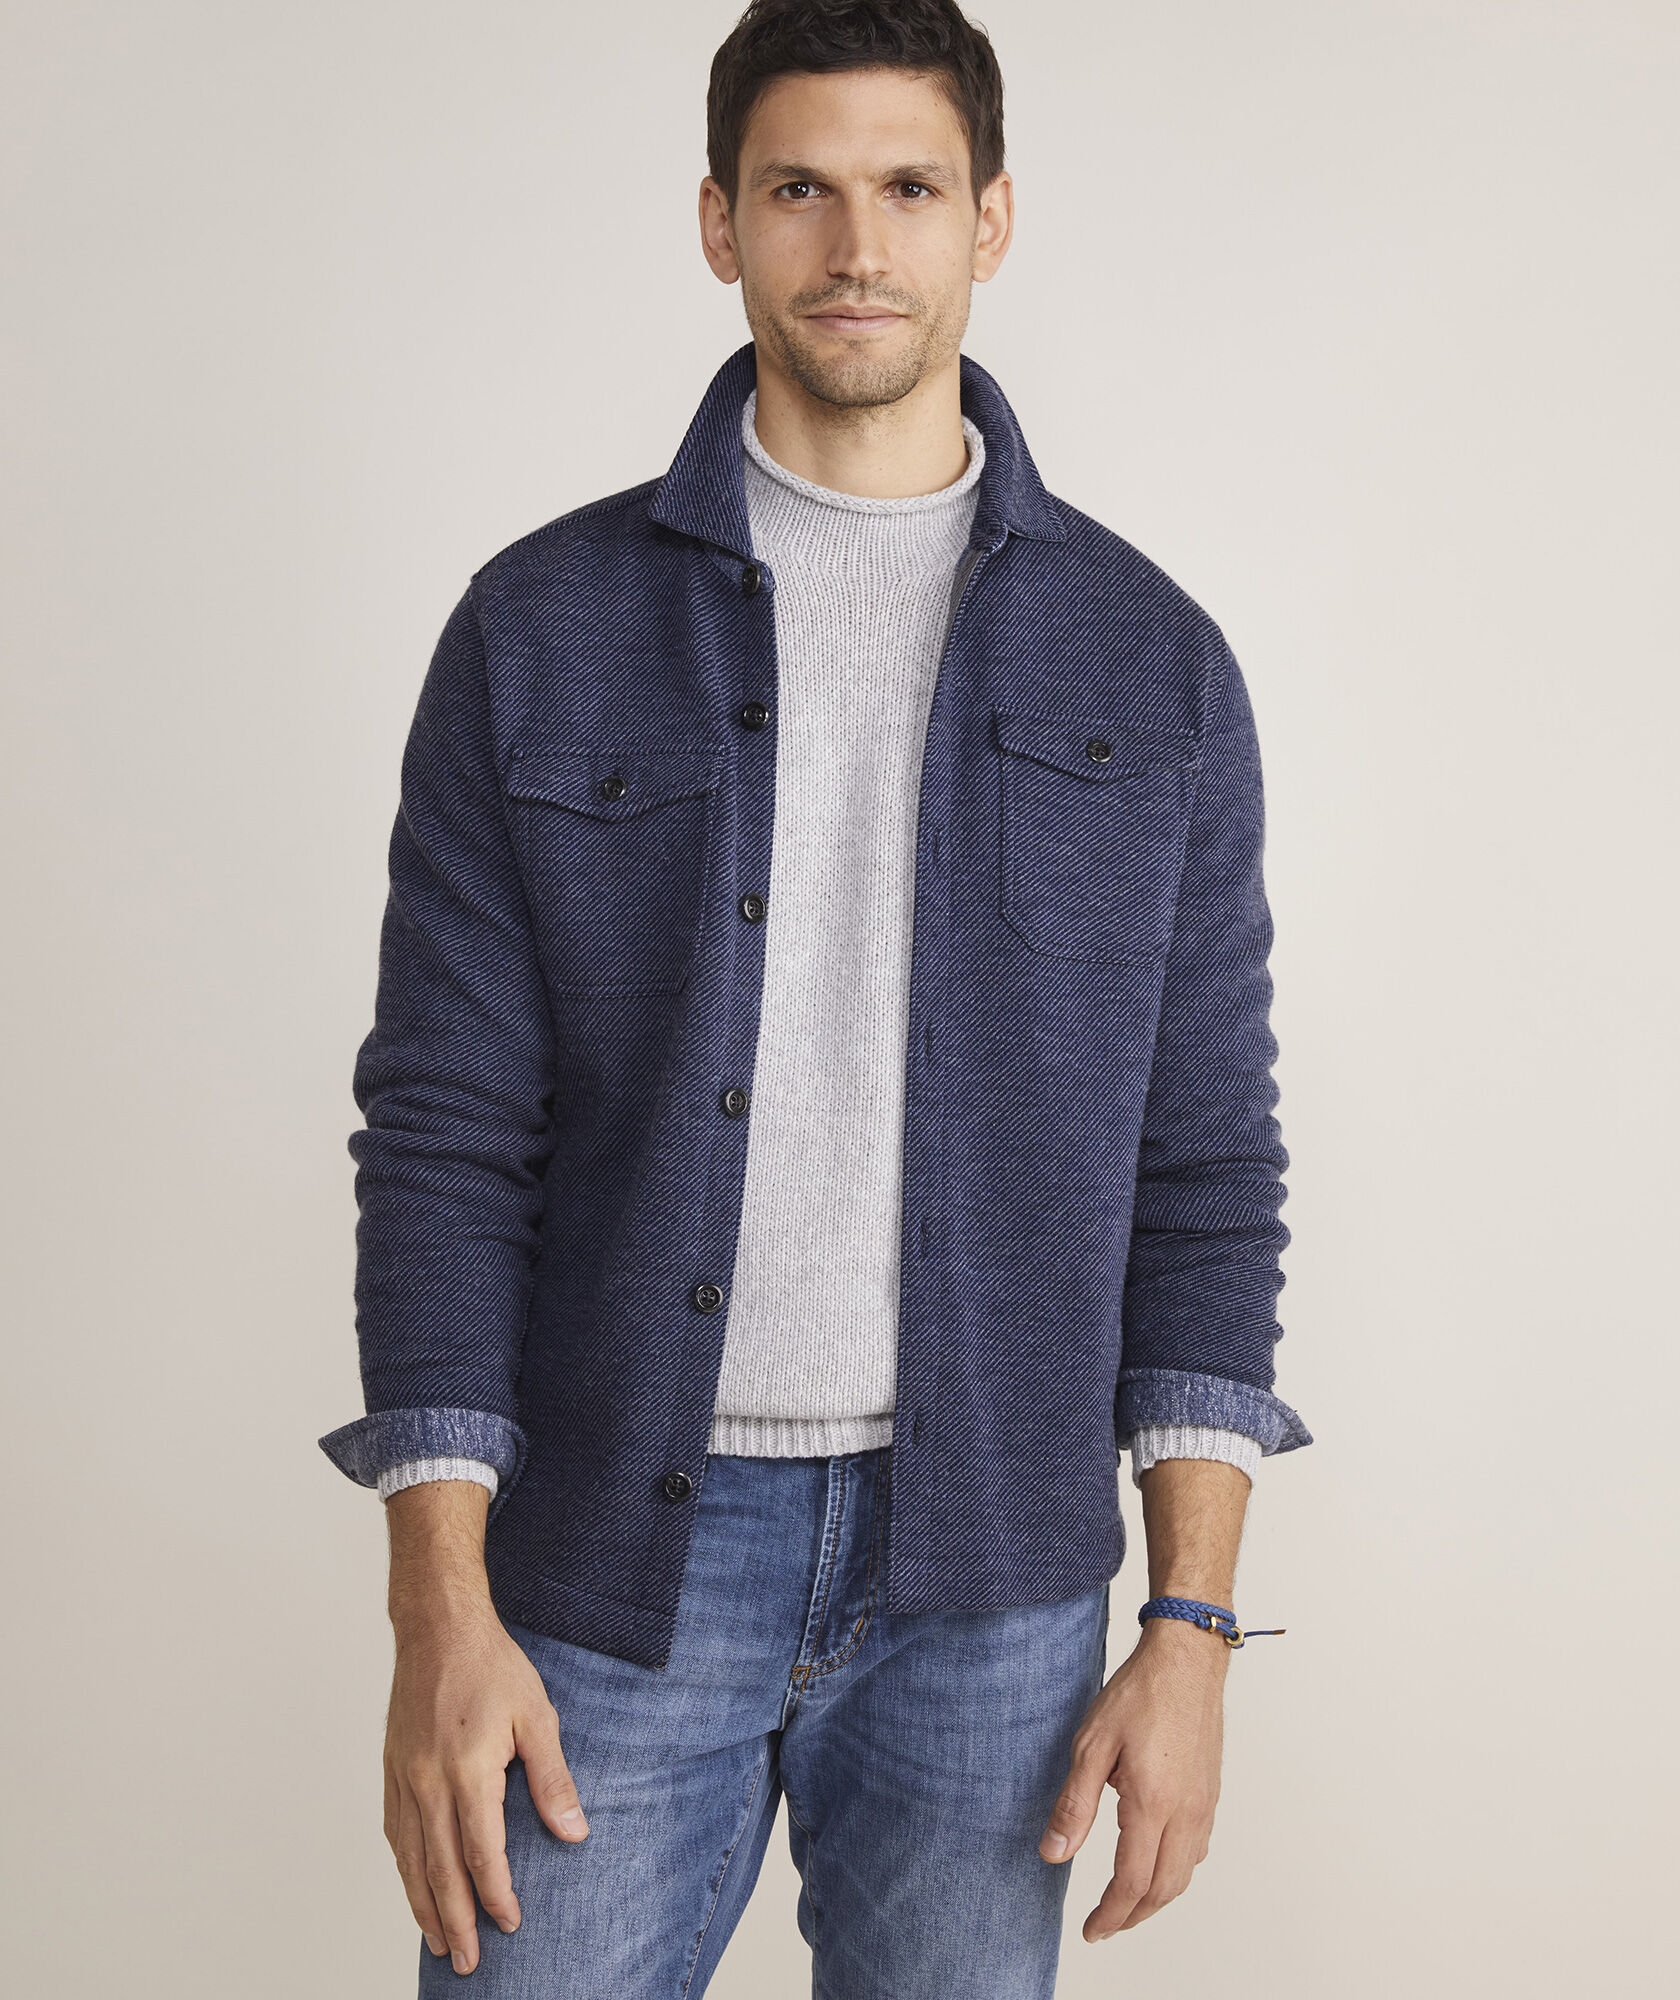 Wool Blend Shirt Jacket | Calvin Klein | Shirt jacket, Wool blend, Jackets